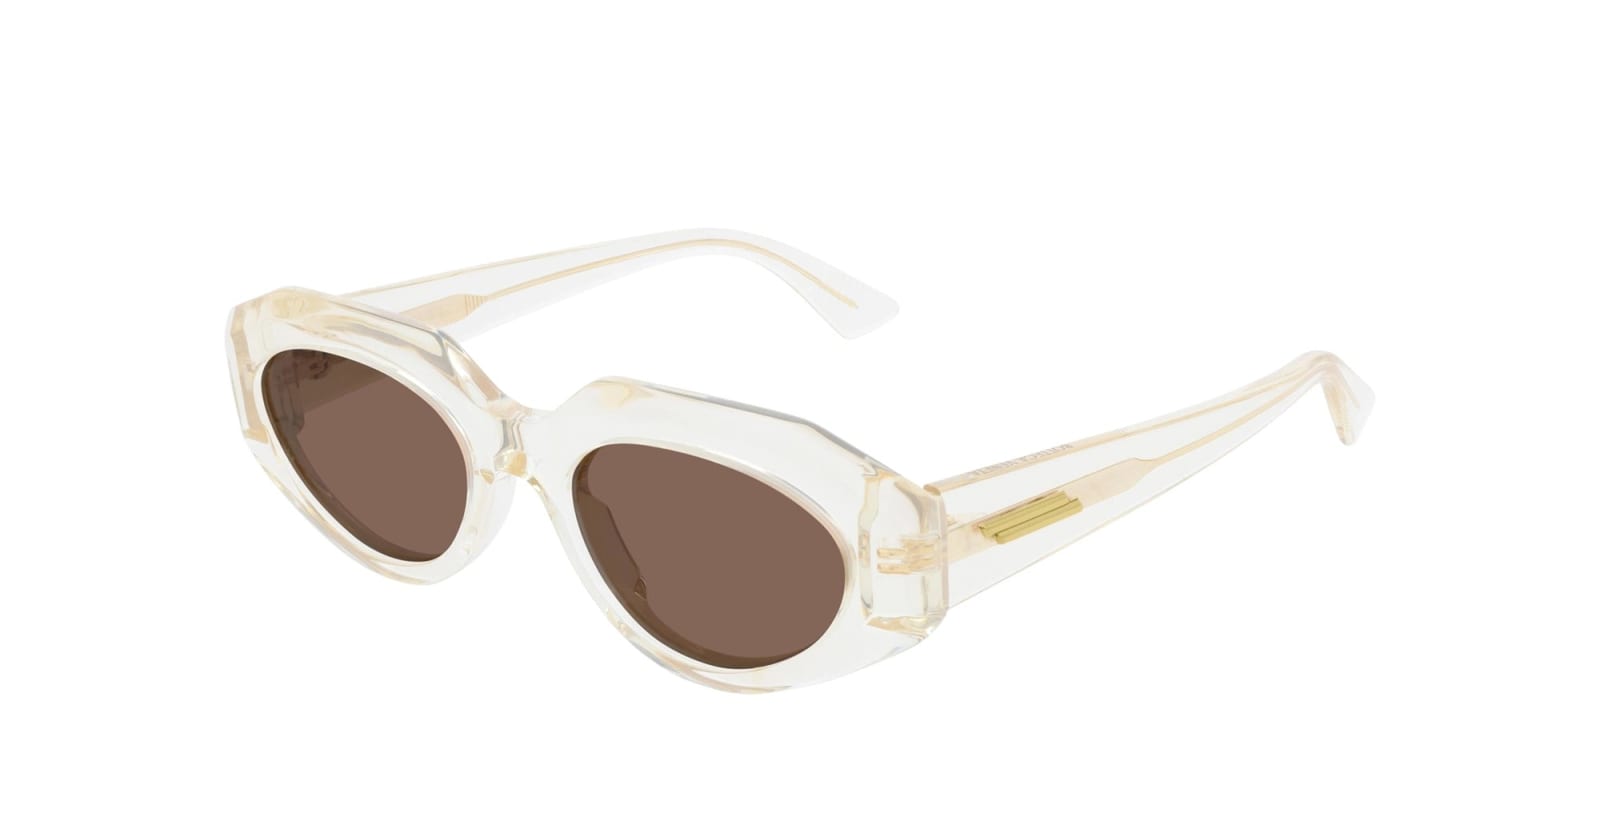 Bottega Veneta Eyewear Bv1031s-004 - Beige Sunglasses